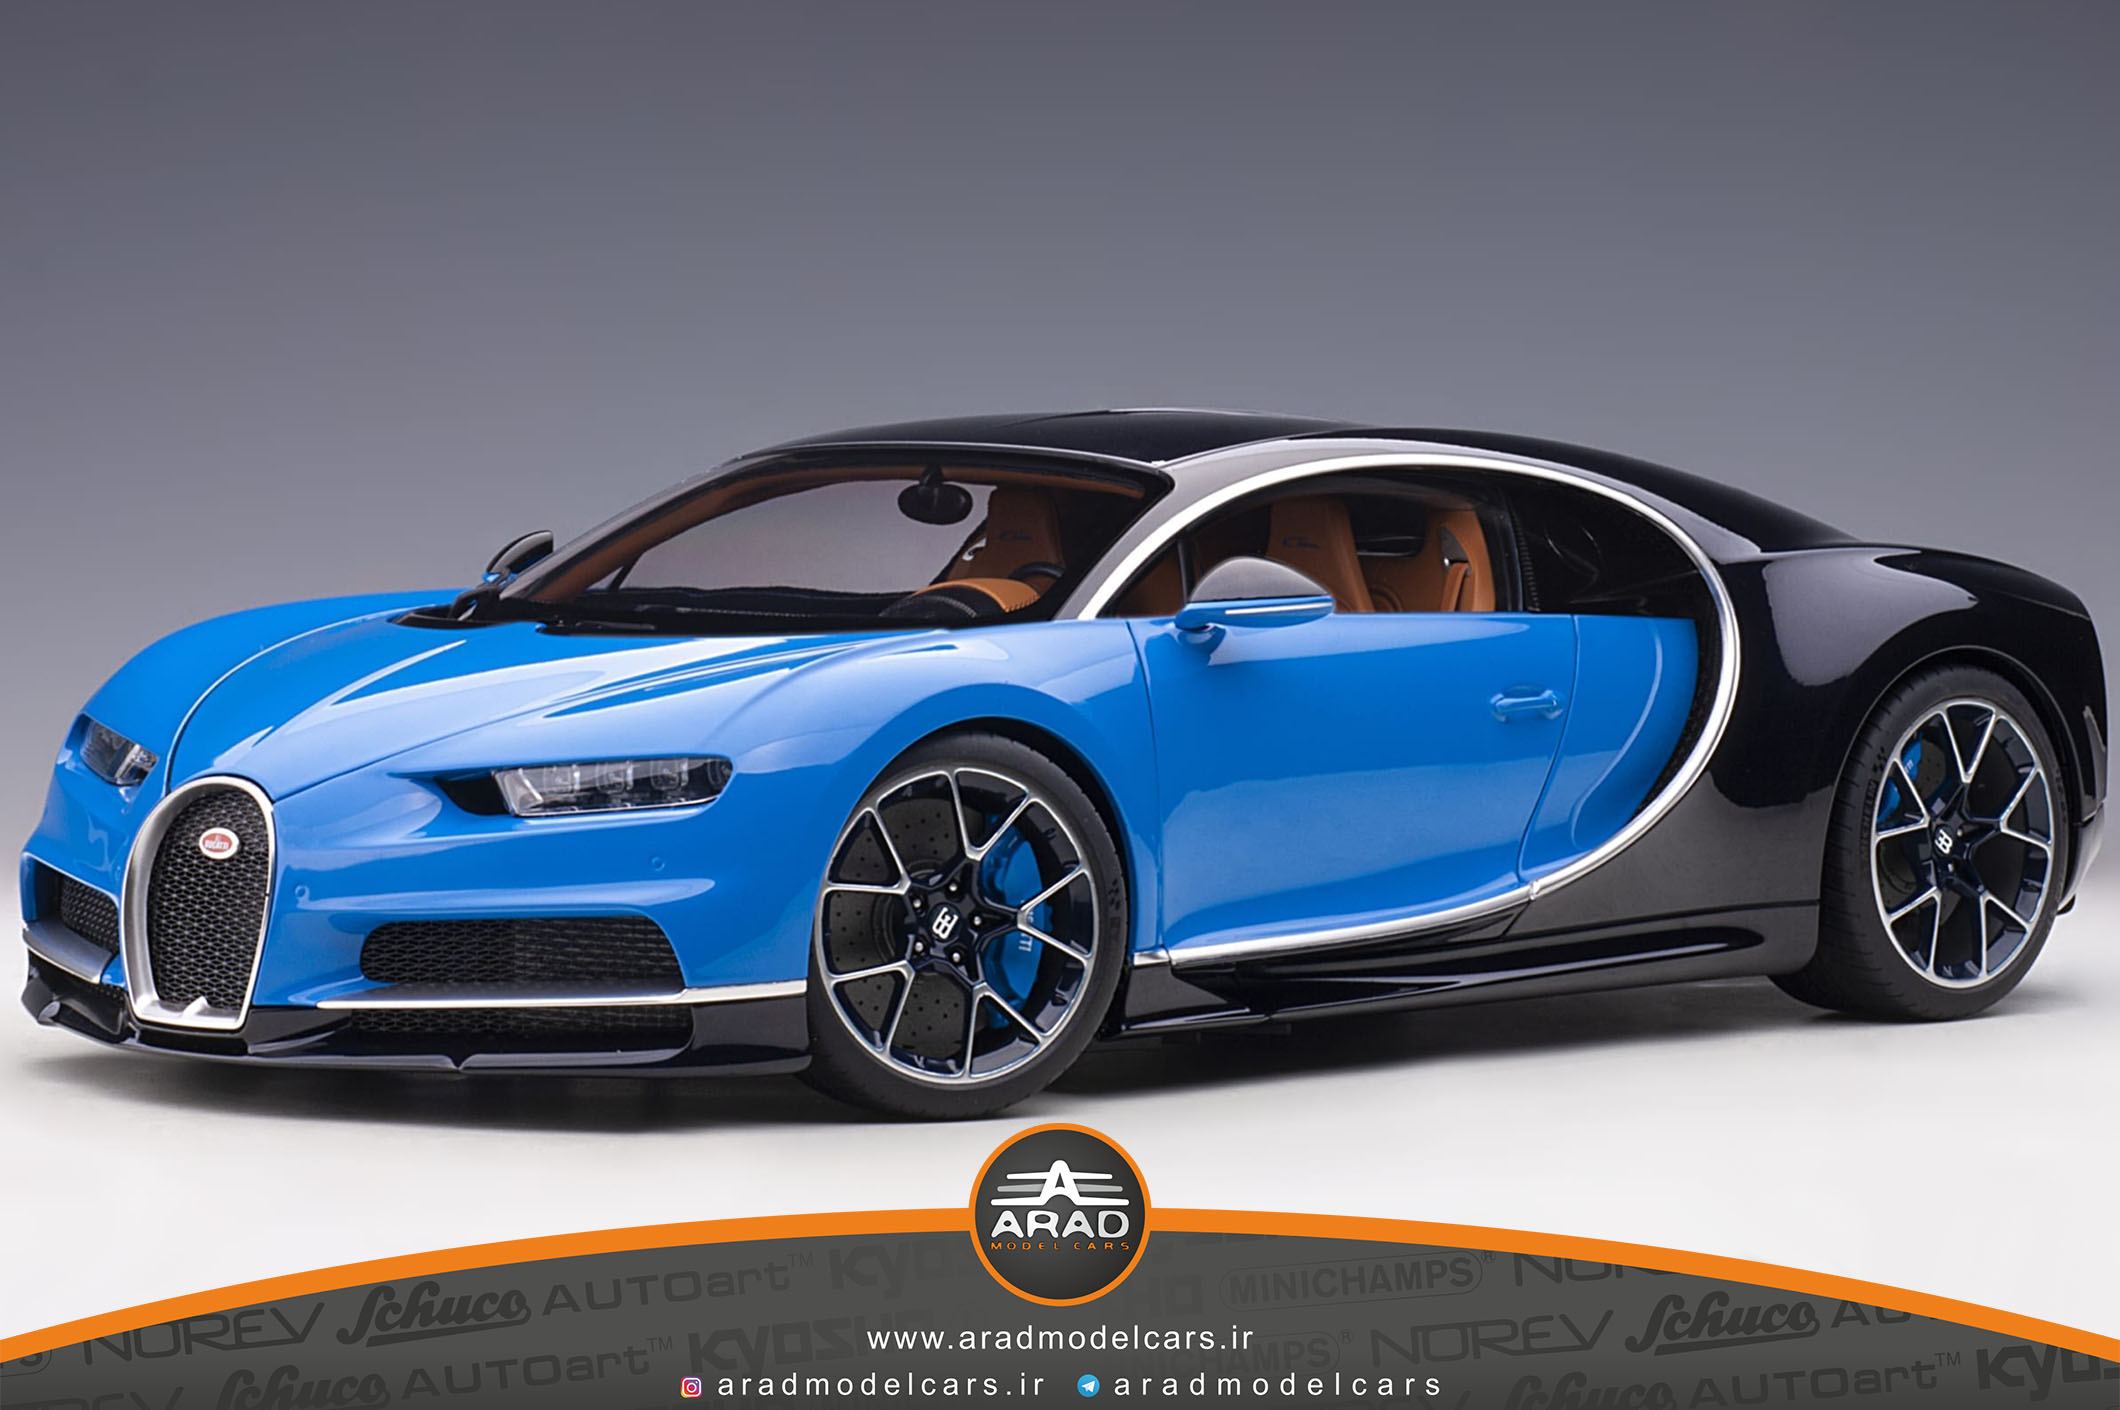 Bugatti Chiron blue